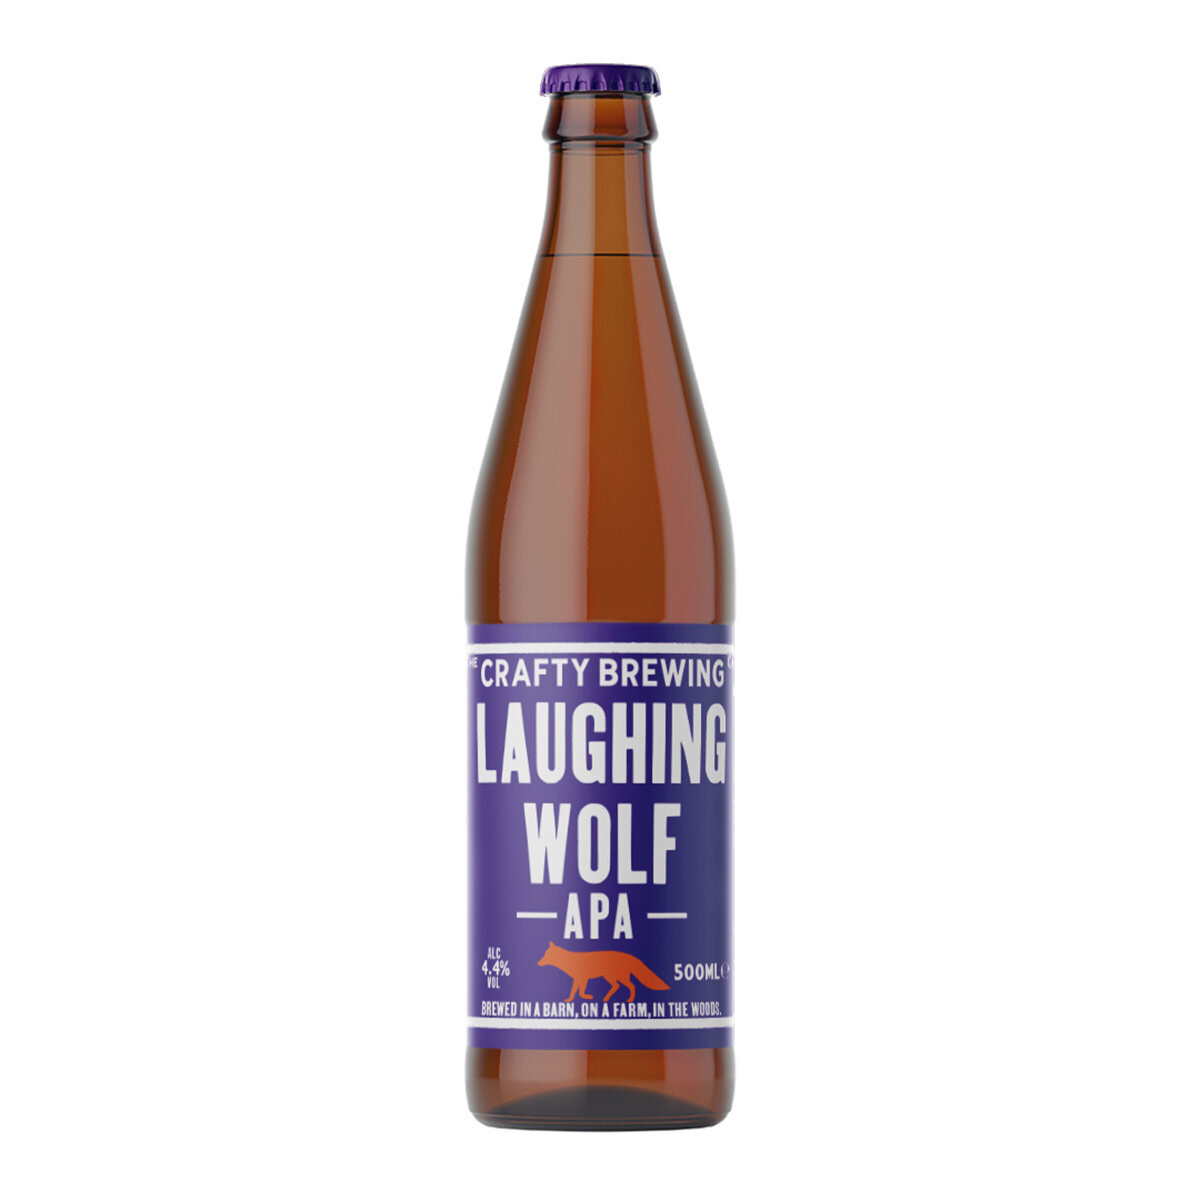 Single bottle of Laughing Wolf APA